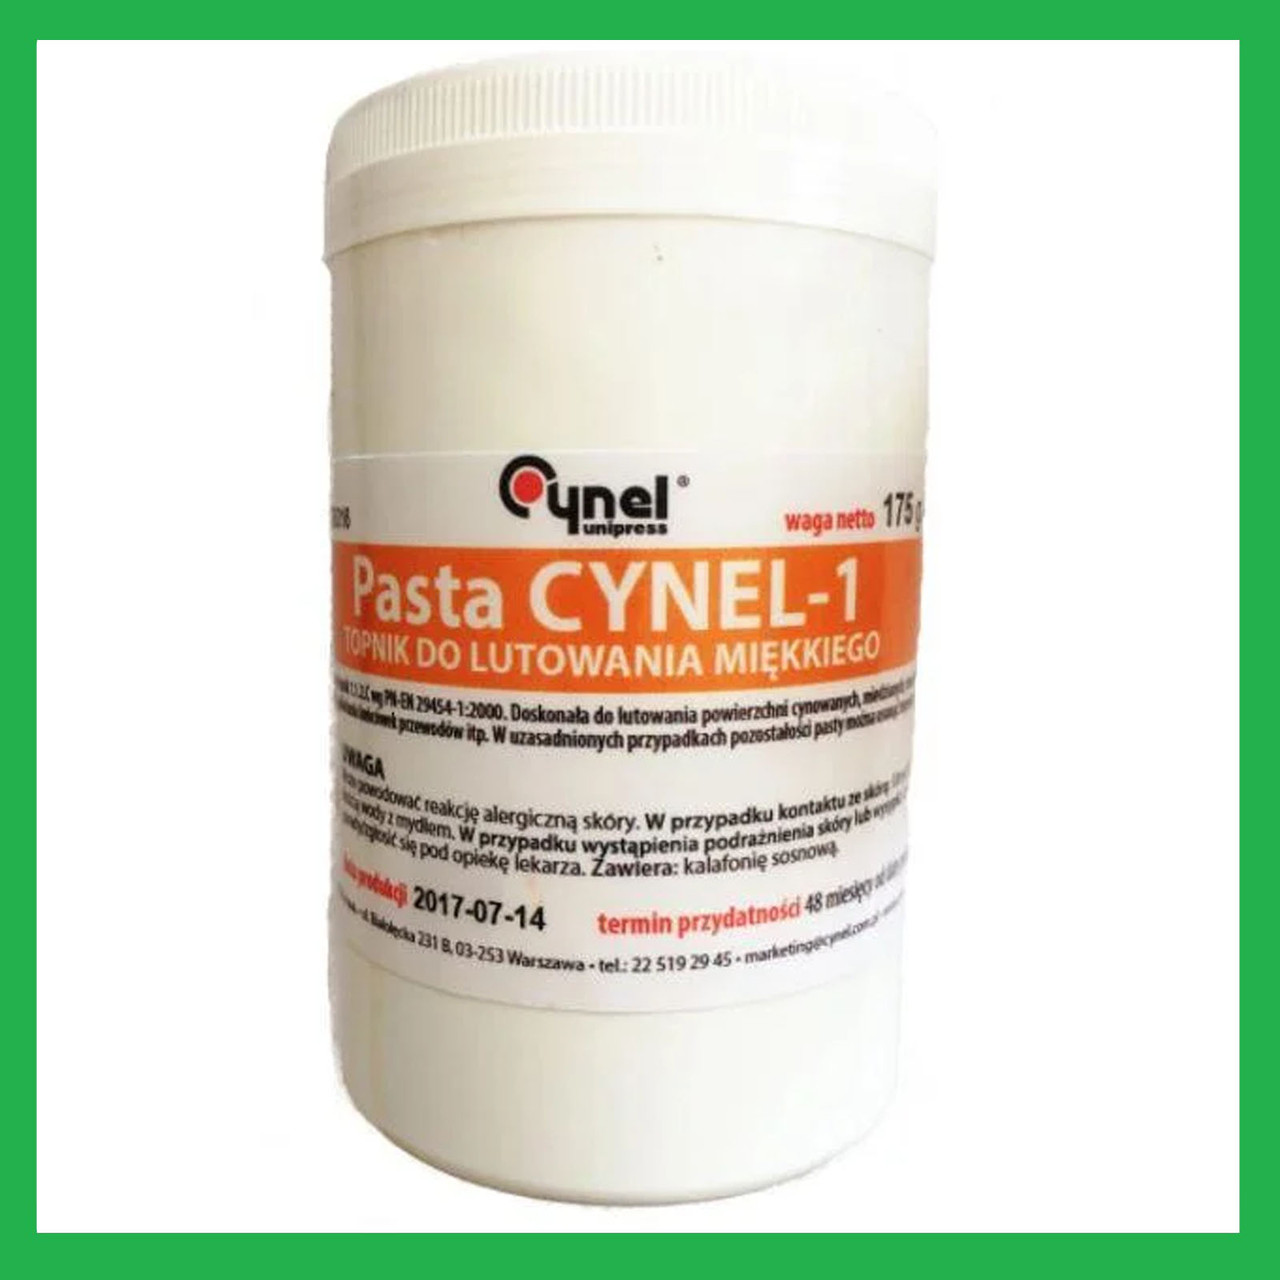 Флюс RMA Cynel — 1 каніфольний, Польща 175 грамів